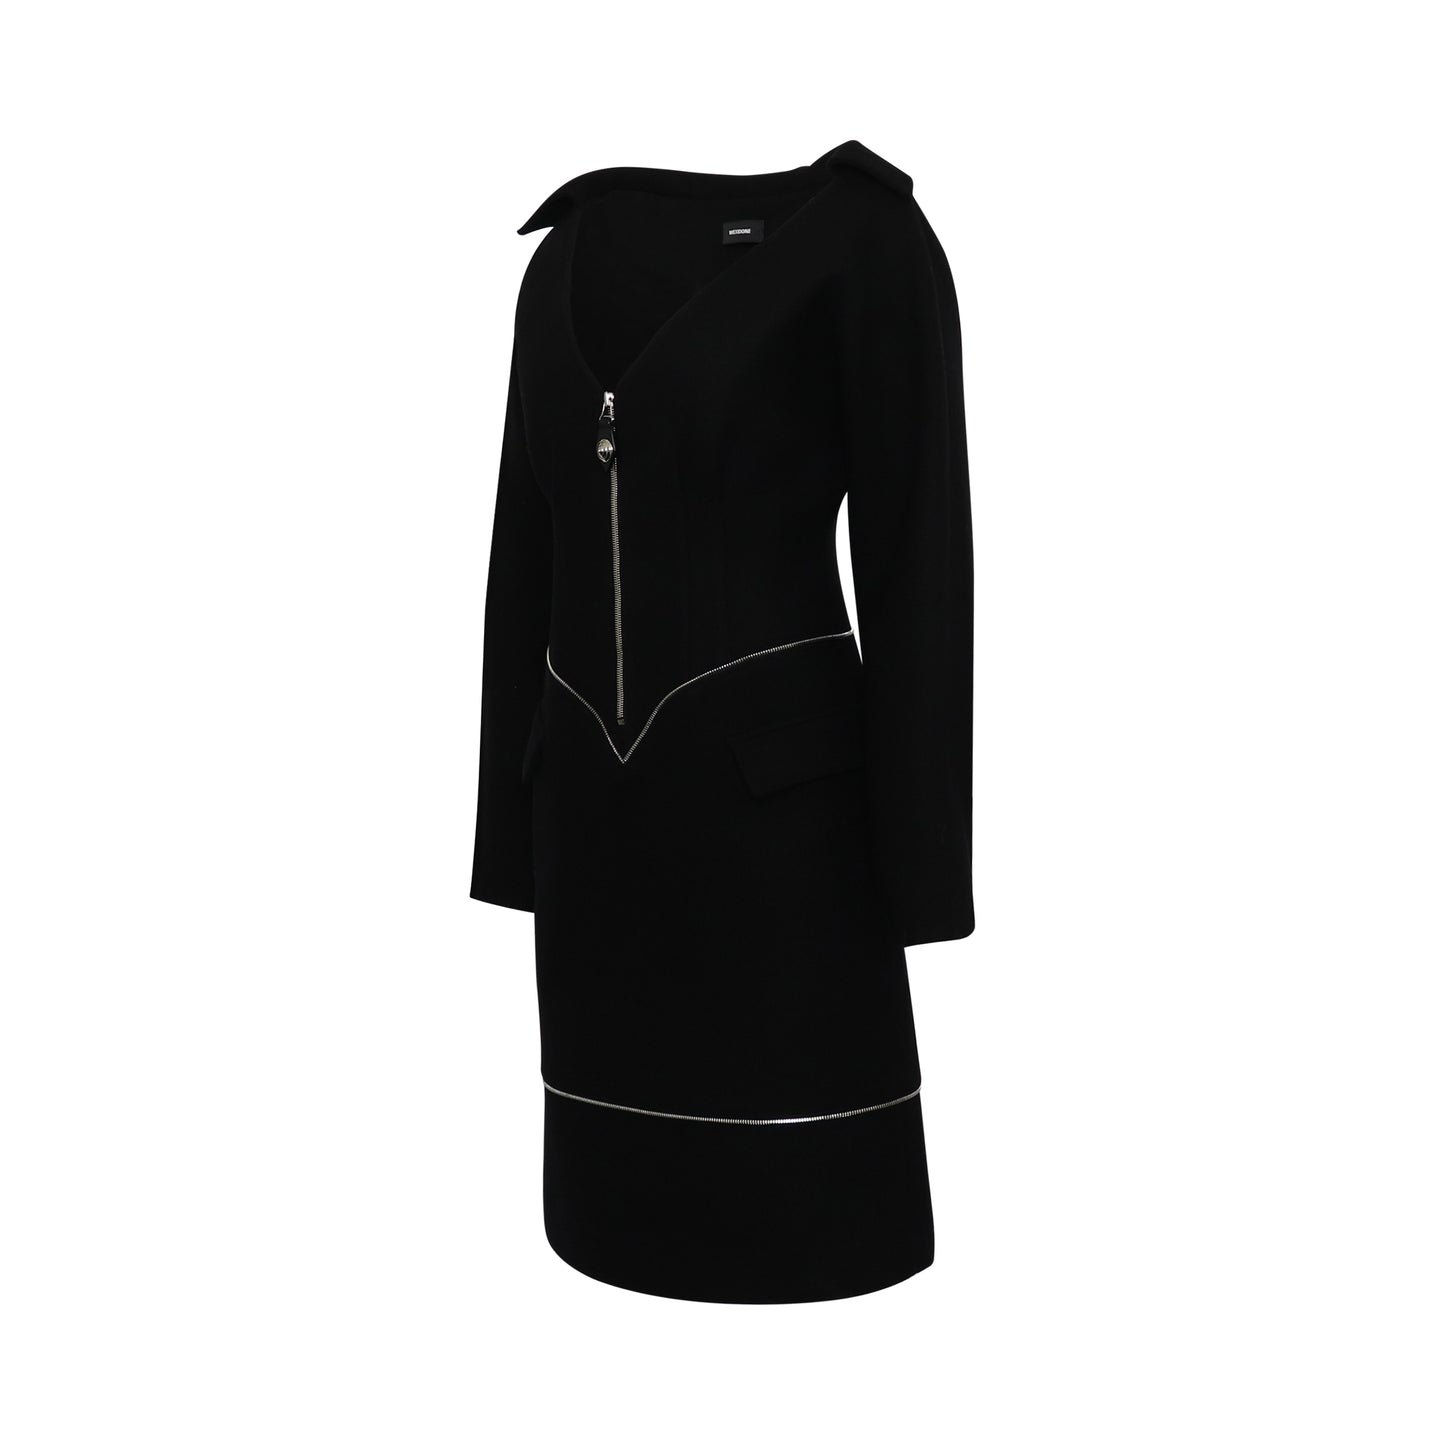 Off-Shoulder Neck Line Dress in Black